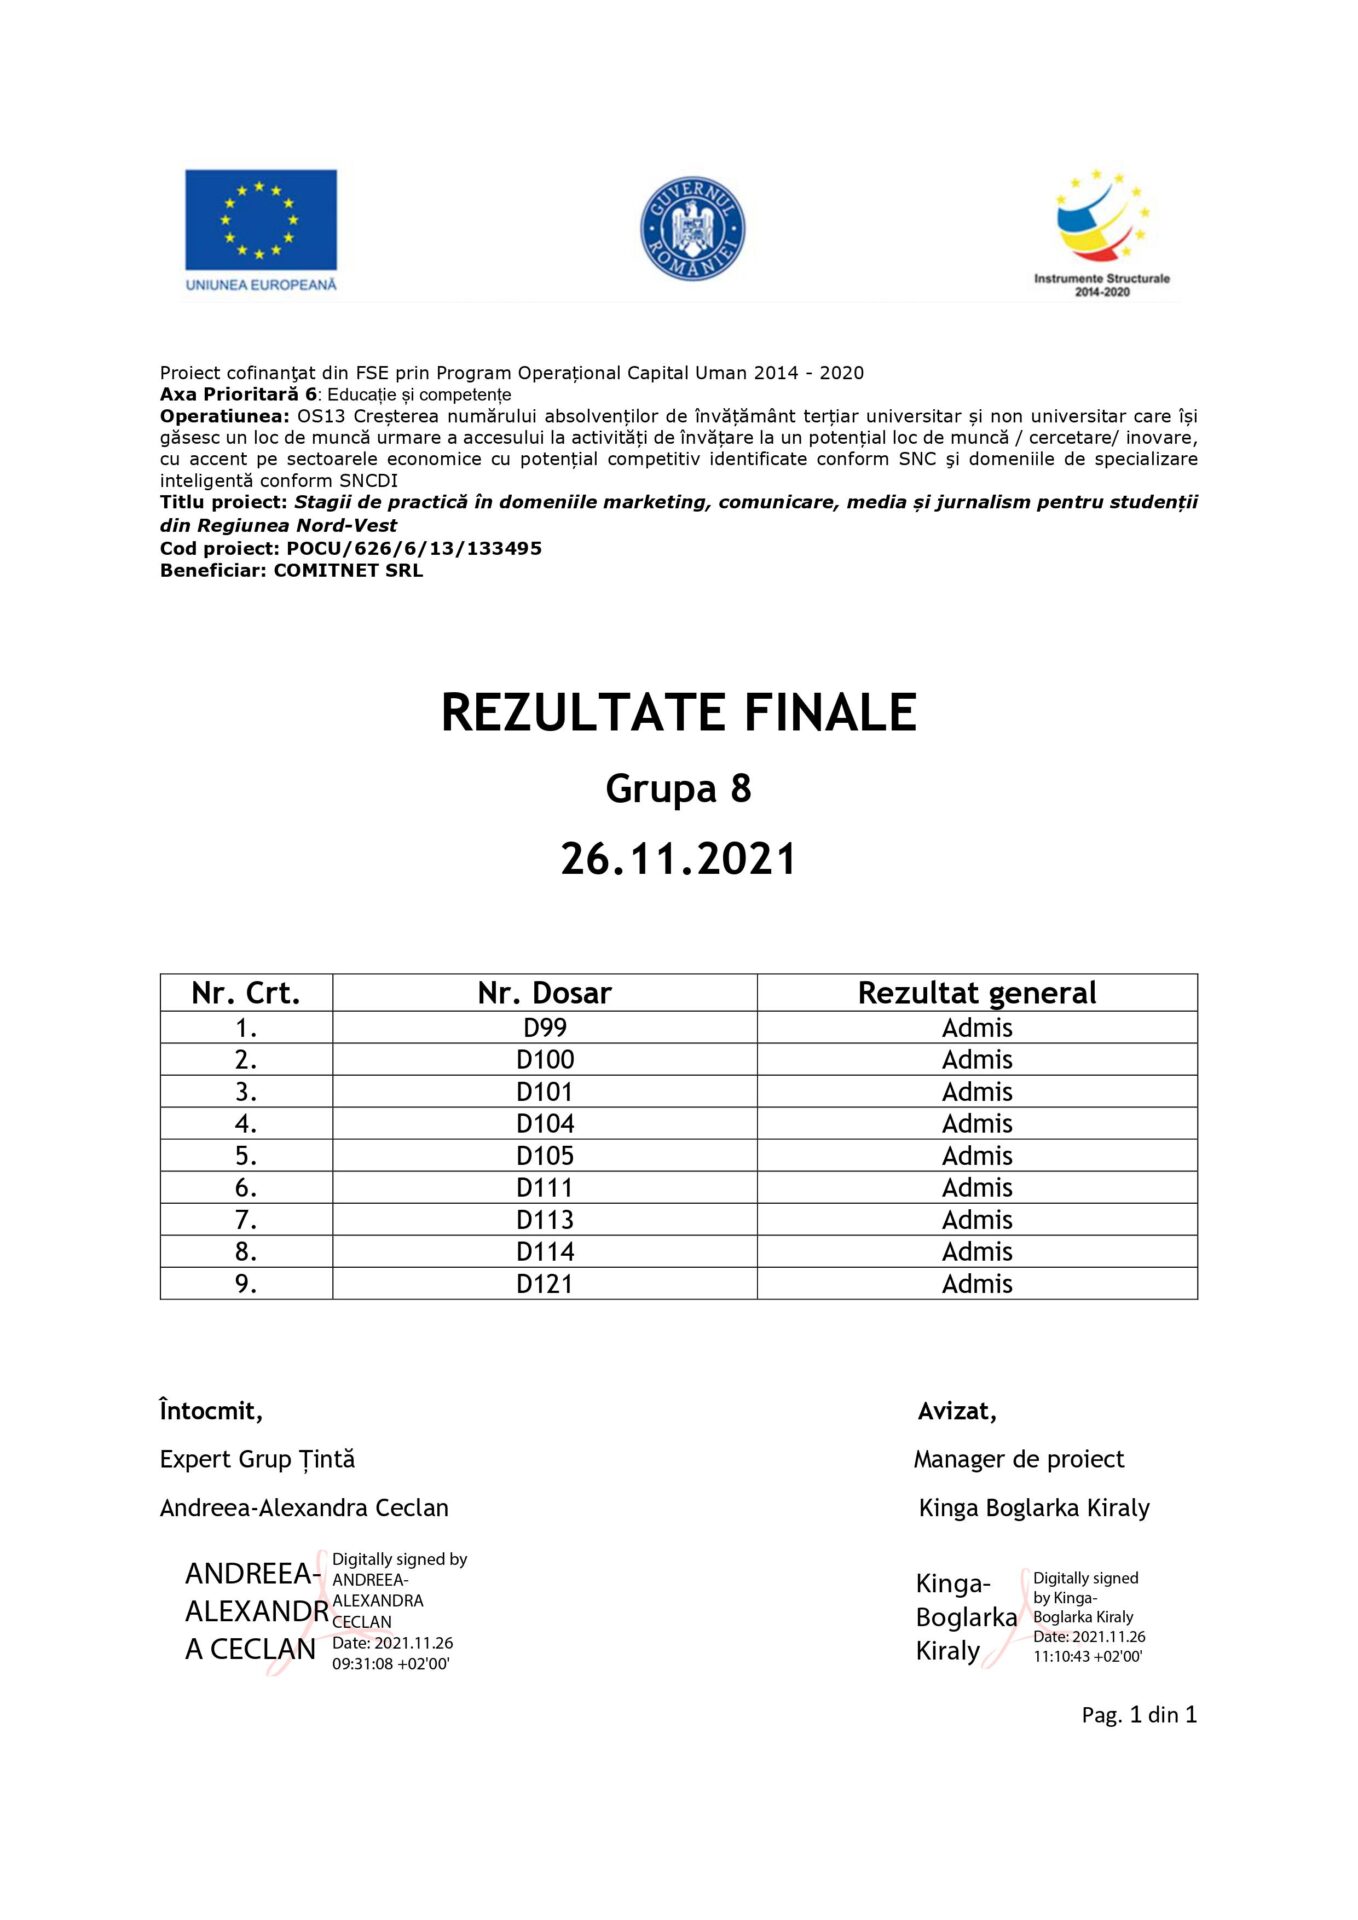 Stagi-de-Practica-SEO365-Rezultate-finale-GrupaVIII